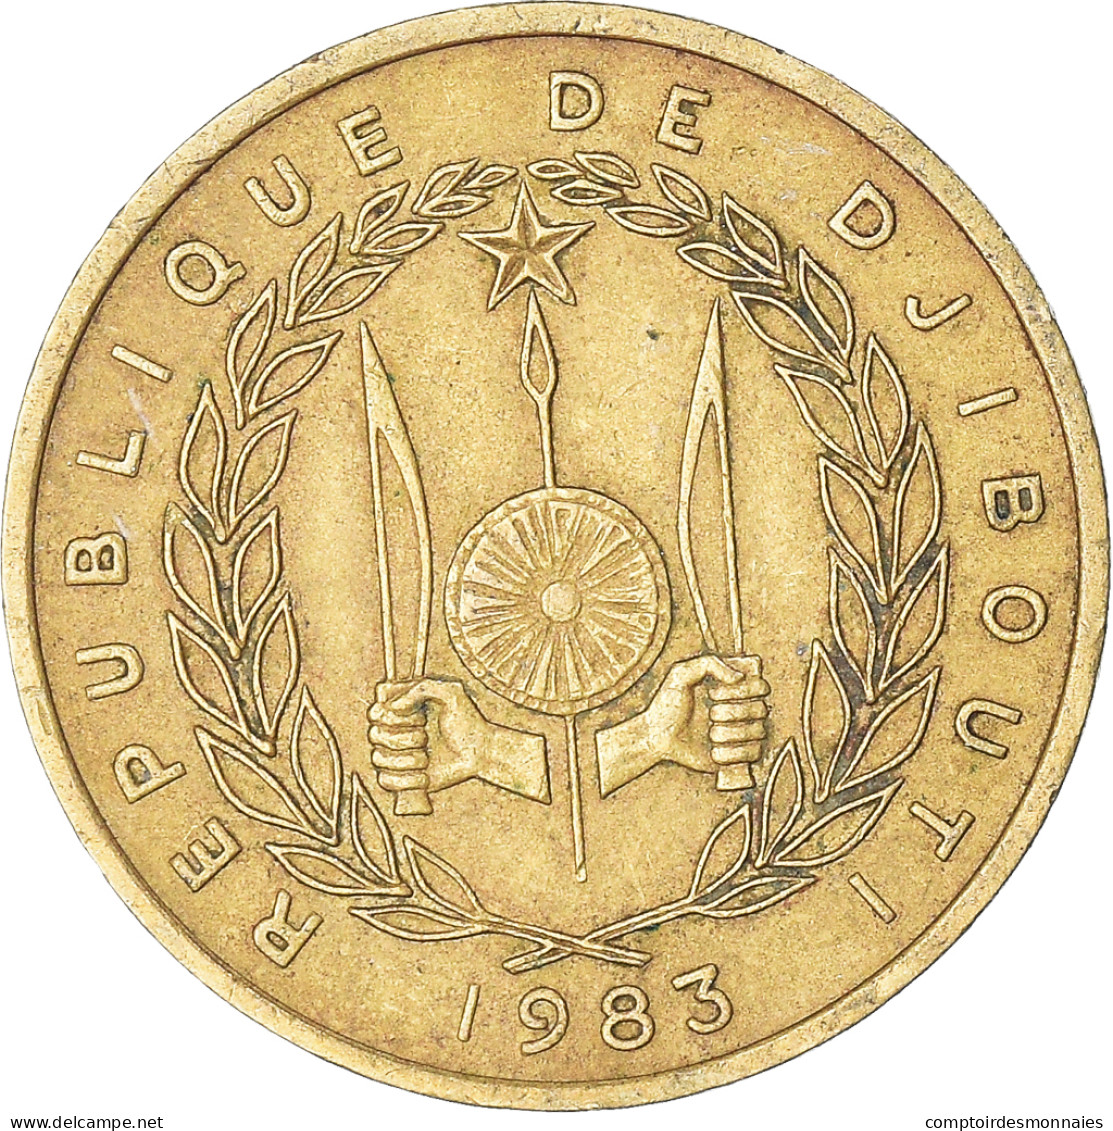 Monnaie, Djibouti, 10 Francs, 1983 - Djibouti